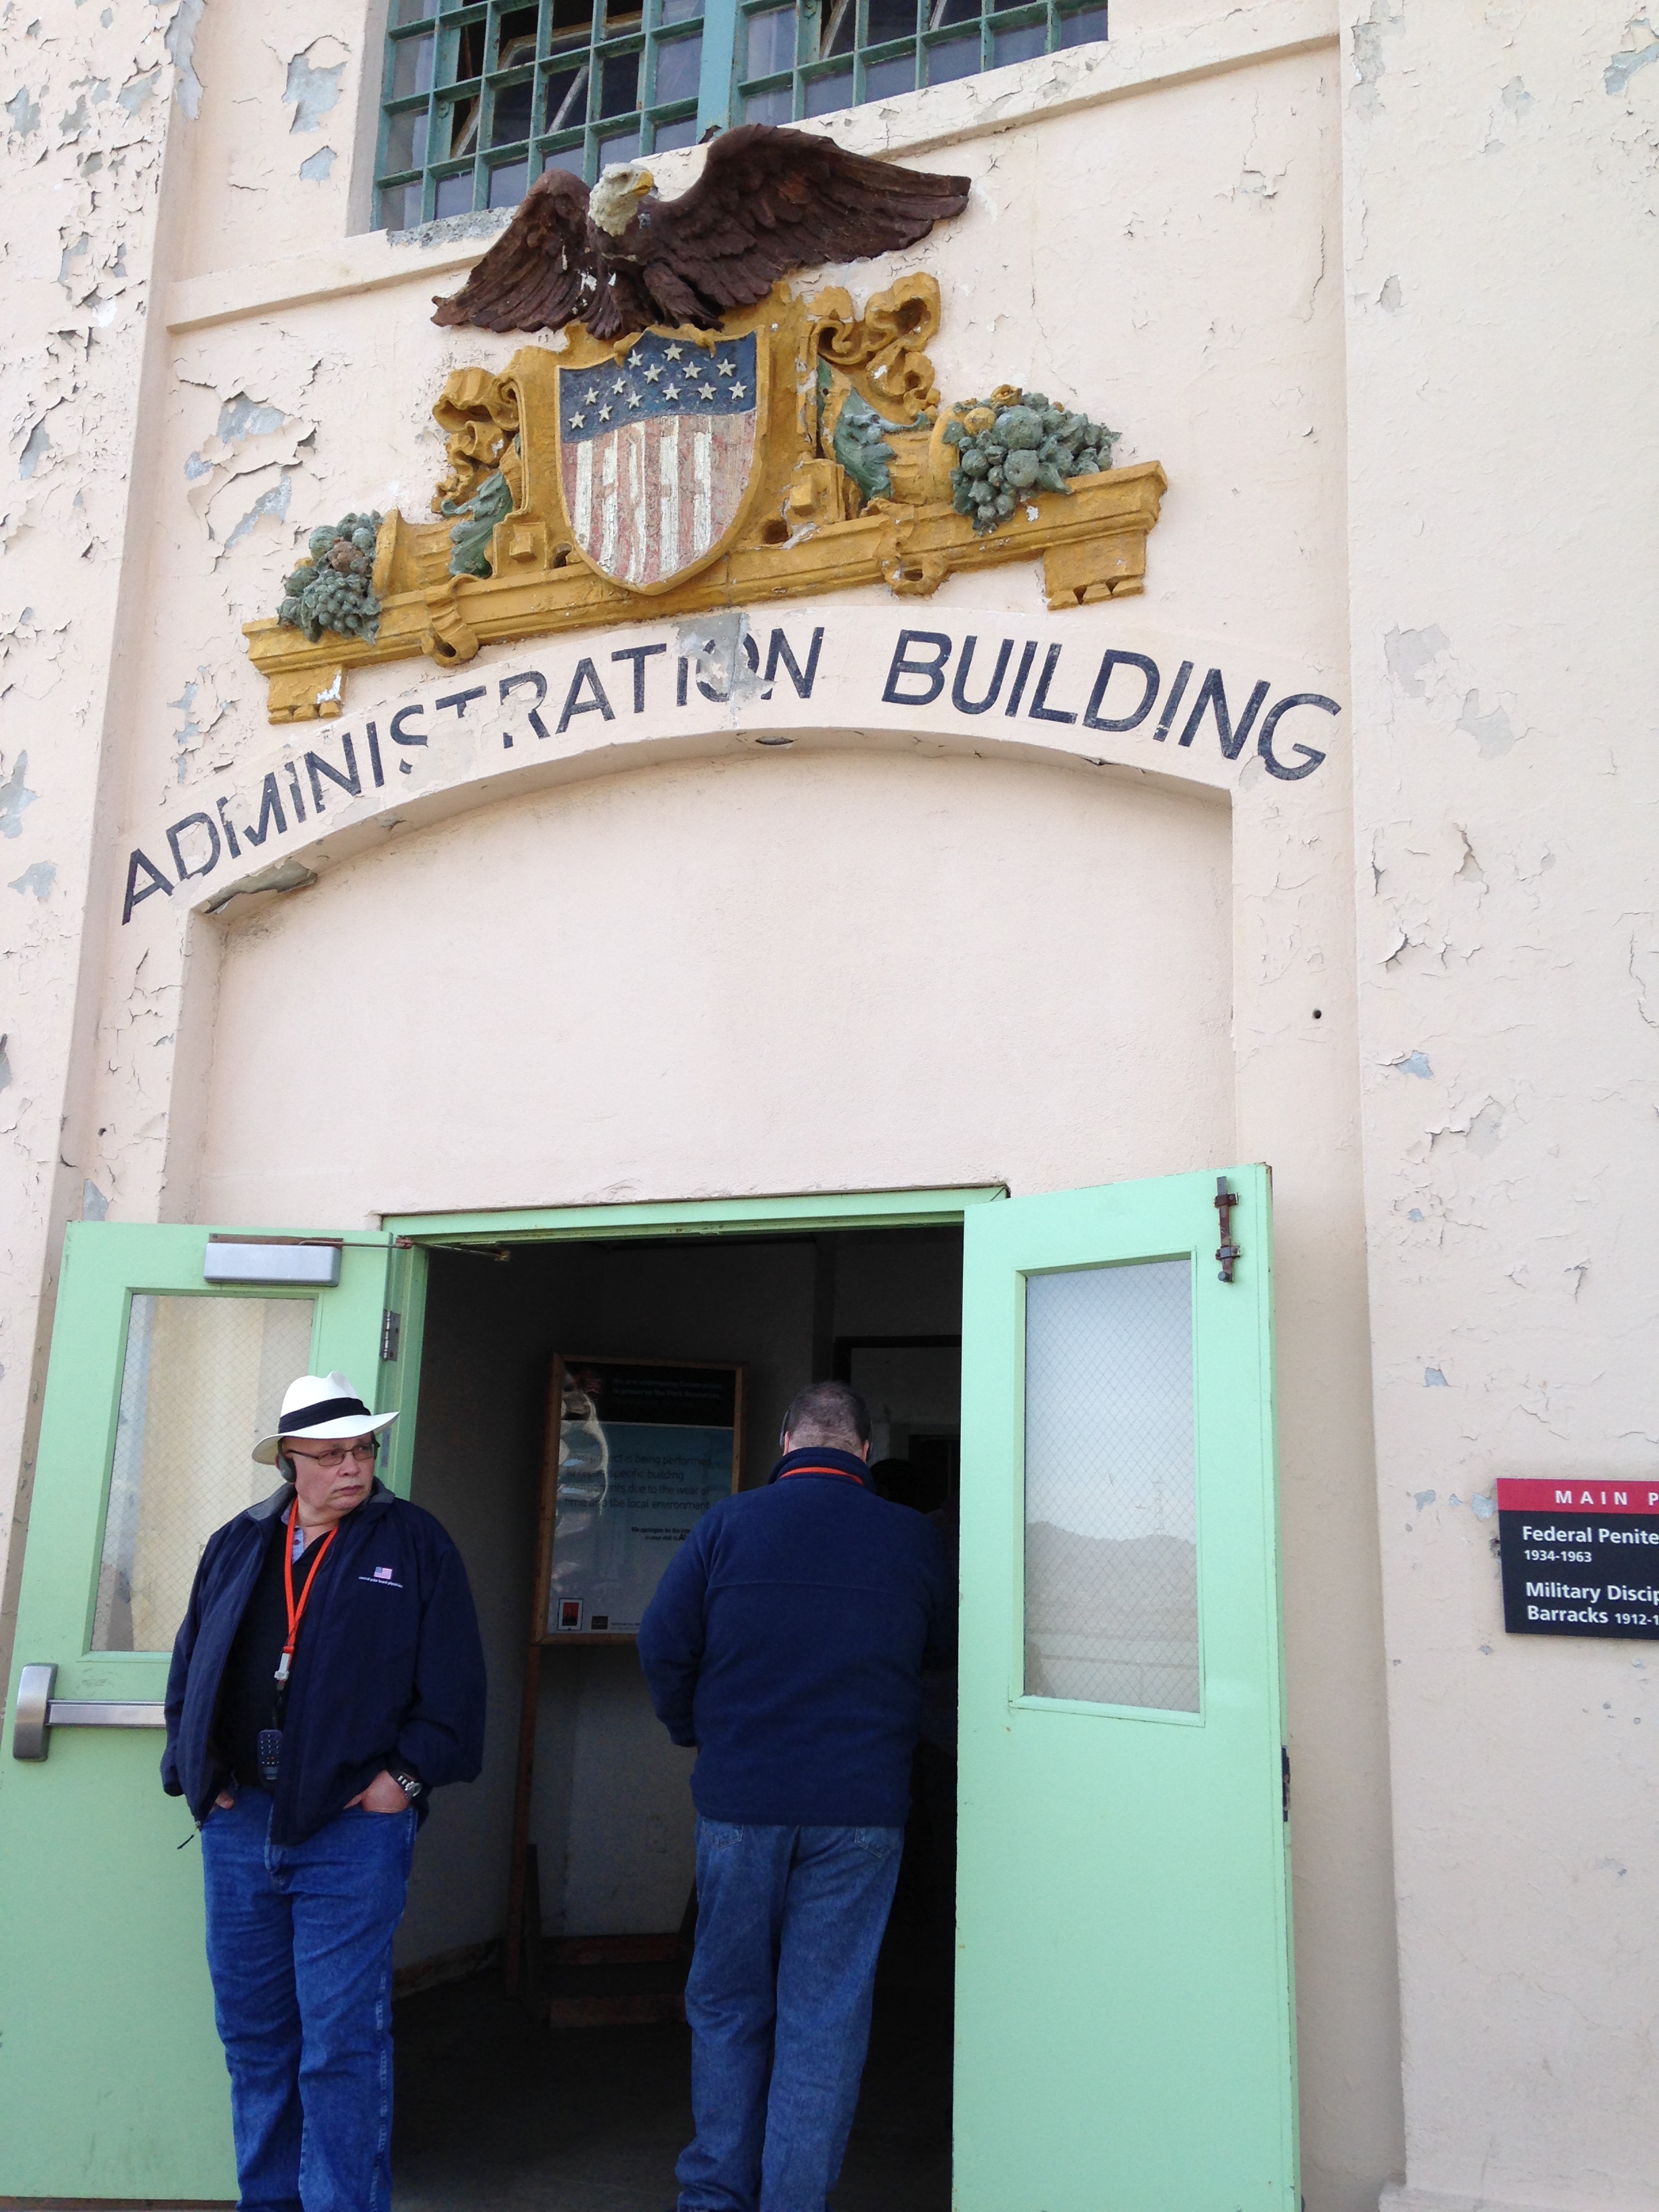 20140426 232743178 ios - Una visita a la Cárcel de Alcatraz